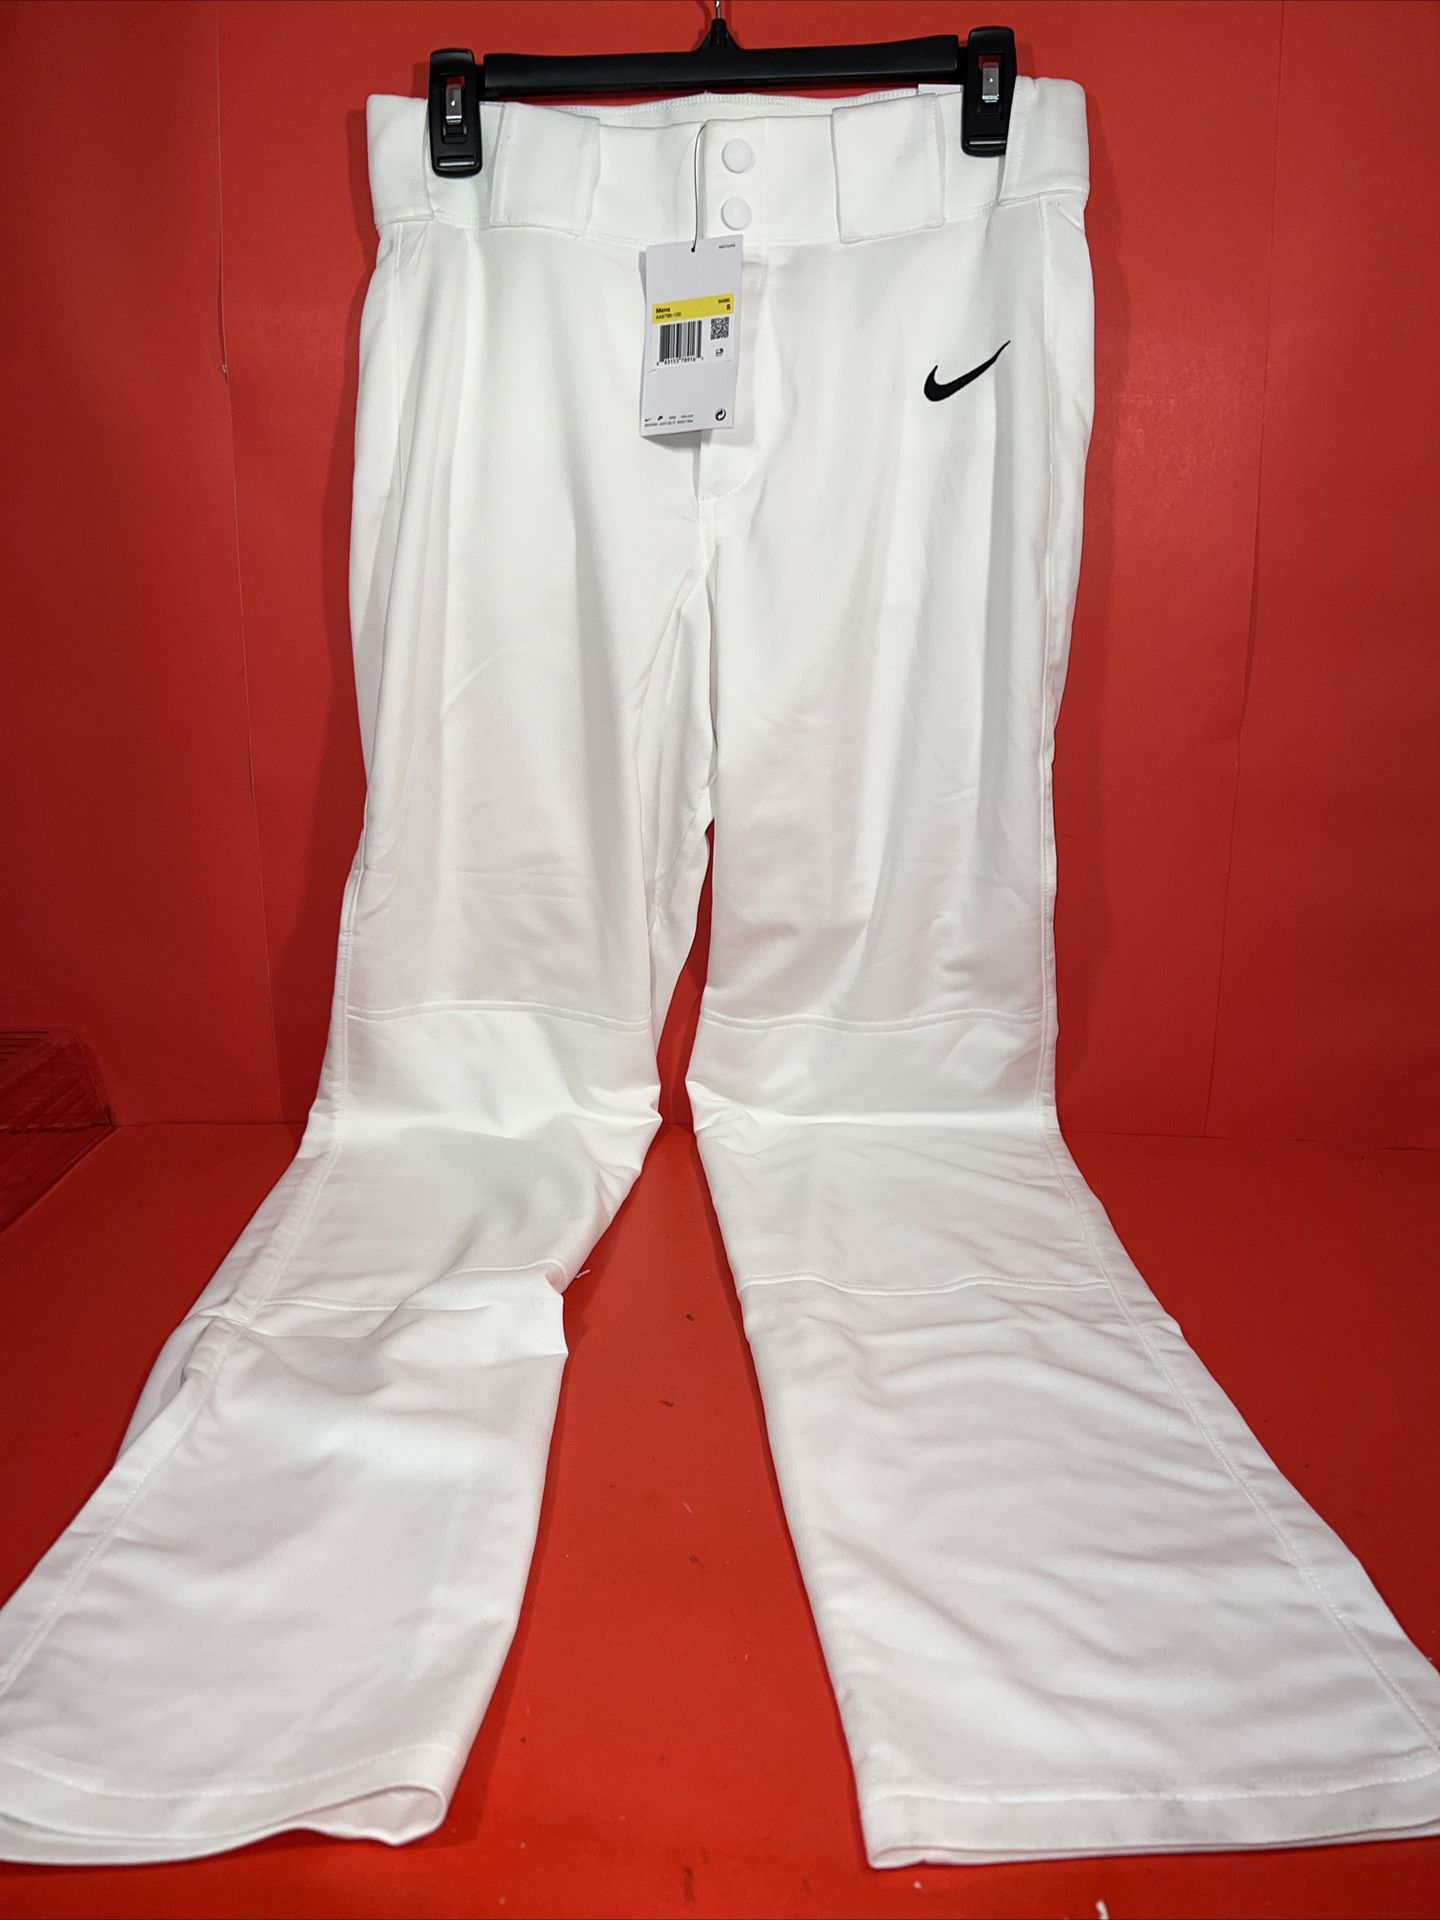 Nike Vapor Pro Baseball Pants Slim Fit Straight Leg - Men's Size S (AA9796-100)